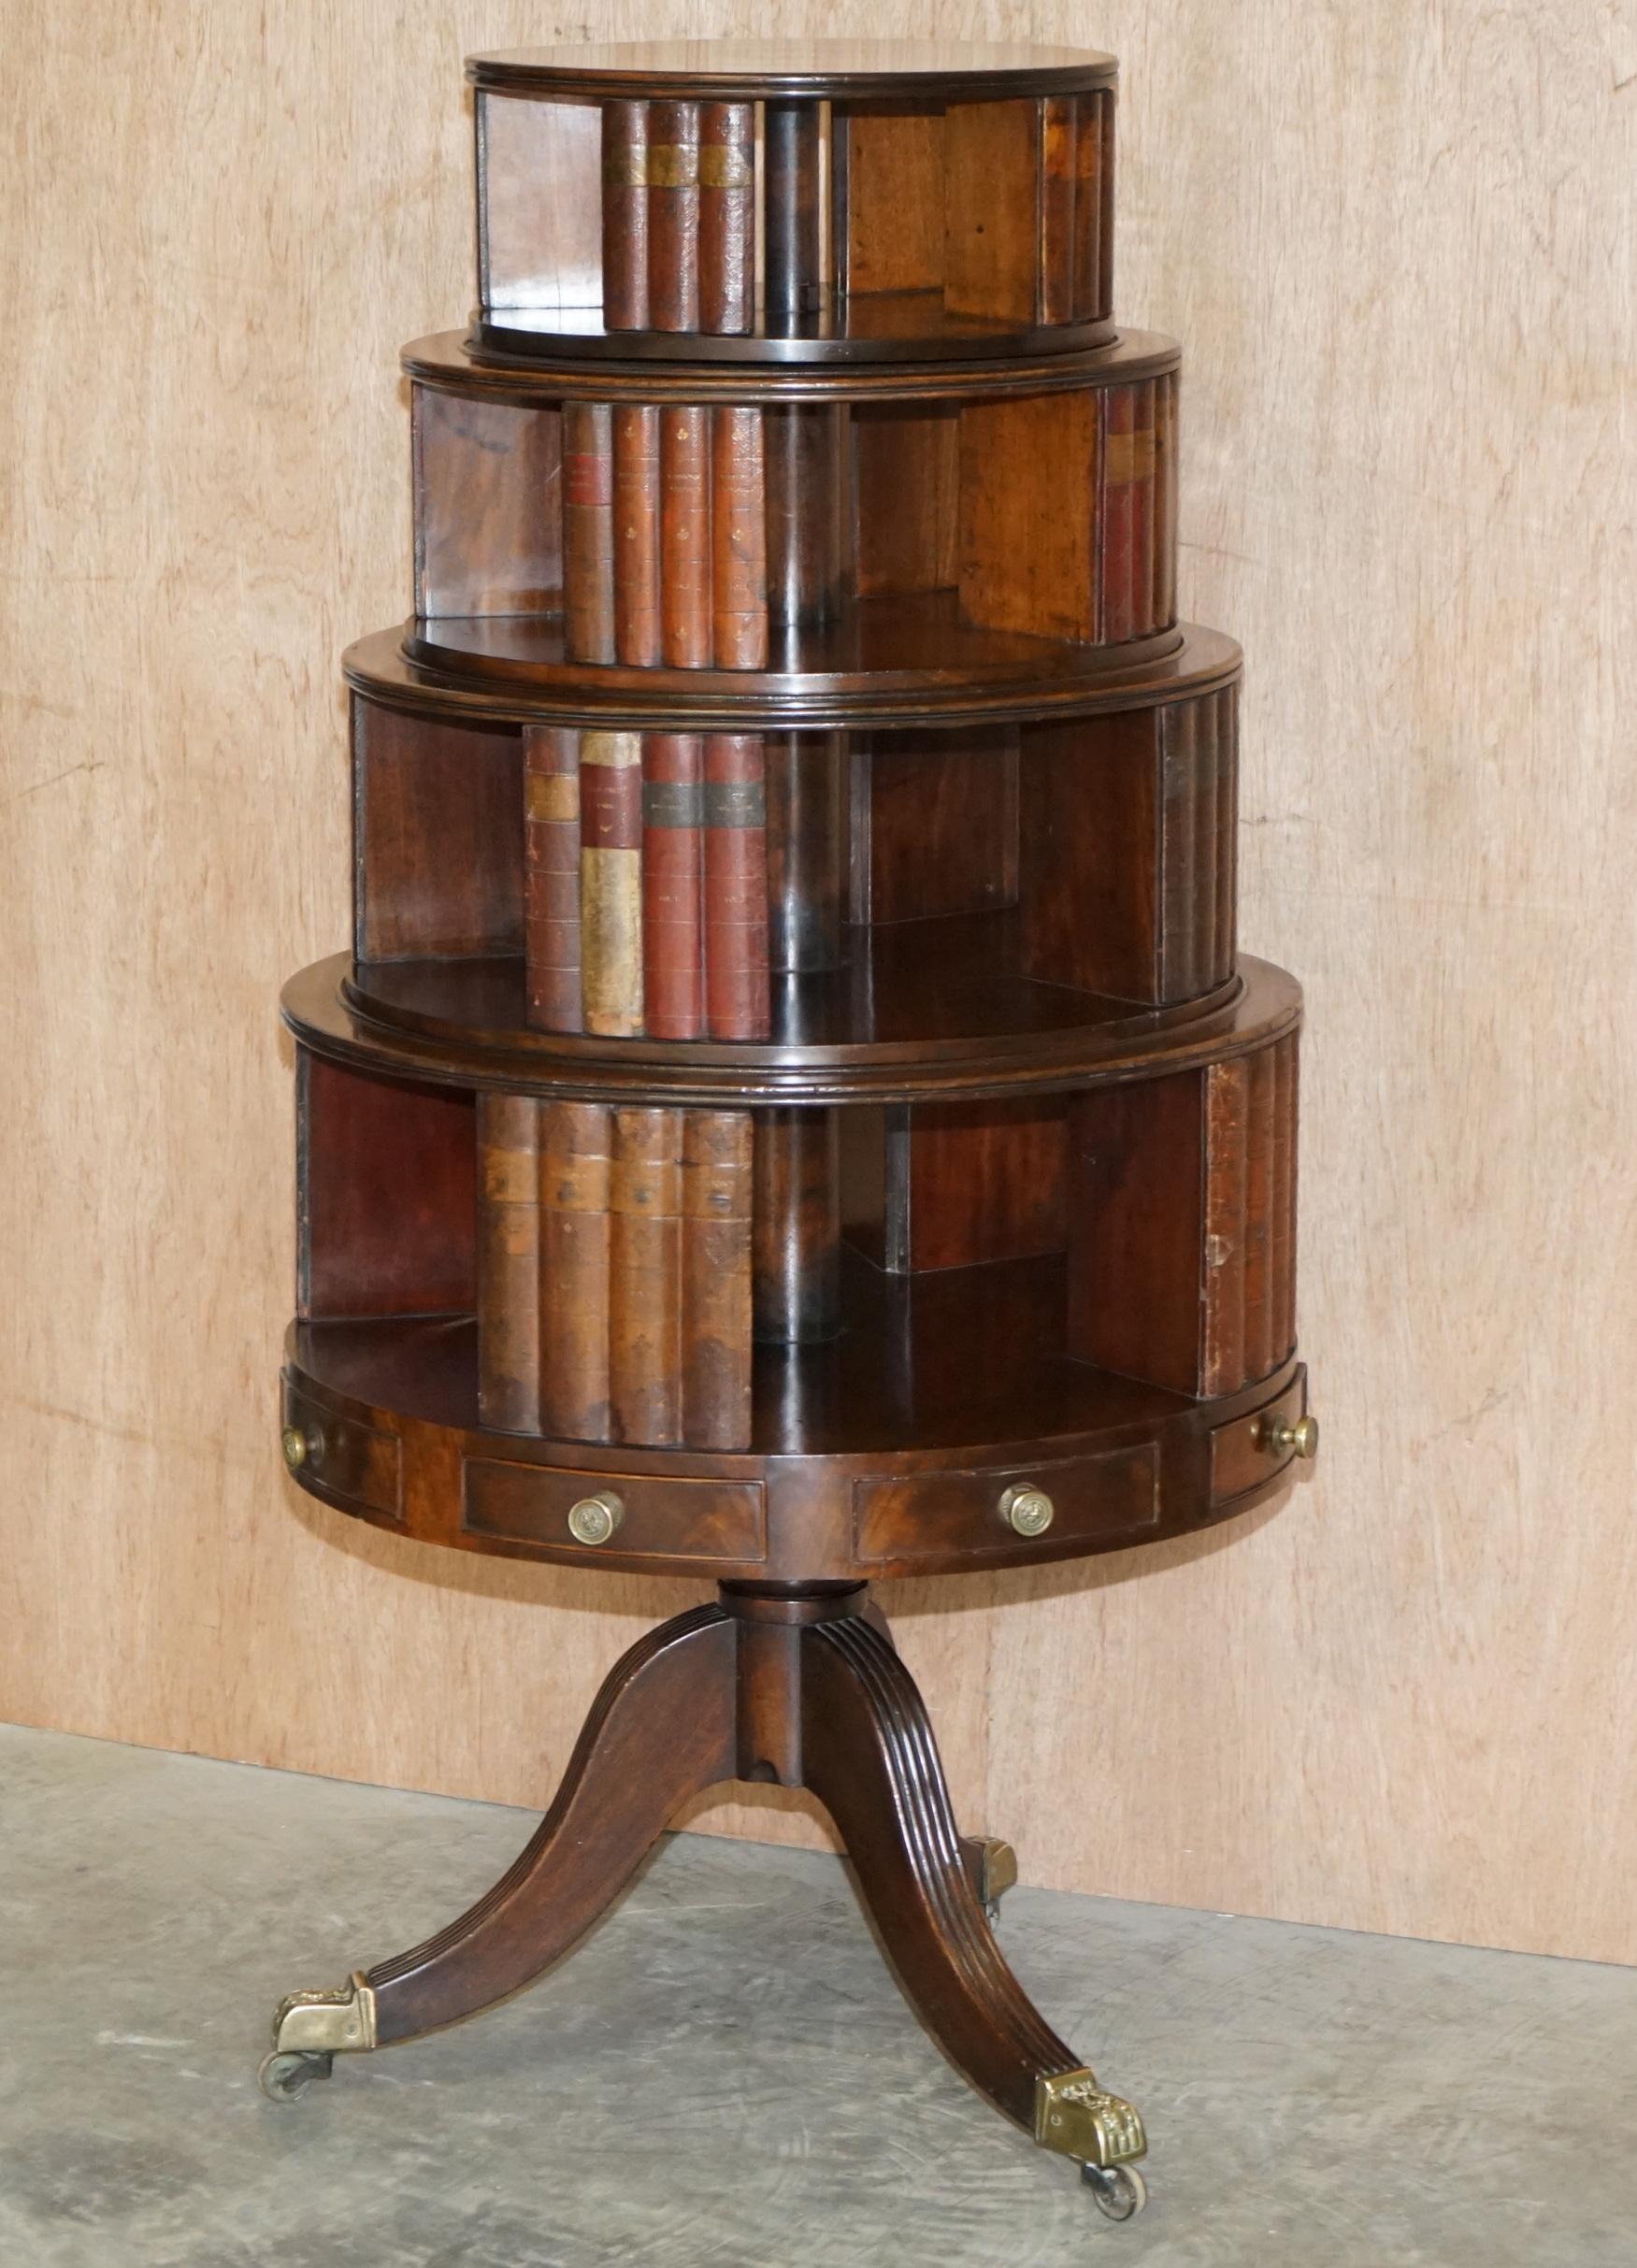 Wir freuen uns, dieses sehr schöne, sehr sammelwürdige originale Regency-Bücherregal aus Mahagoni mit Lederimitat um 1810 anbieten zu können.

Wenn Sie sich dieses Angebot ansehen, dann wissen Sie wahrscheinlich, worum es sich handelt. Es handelt